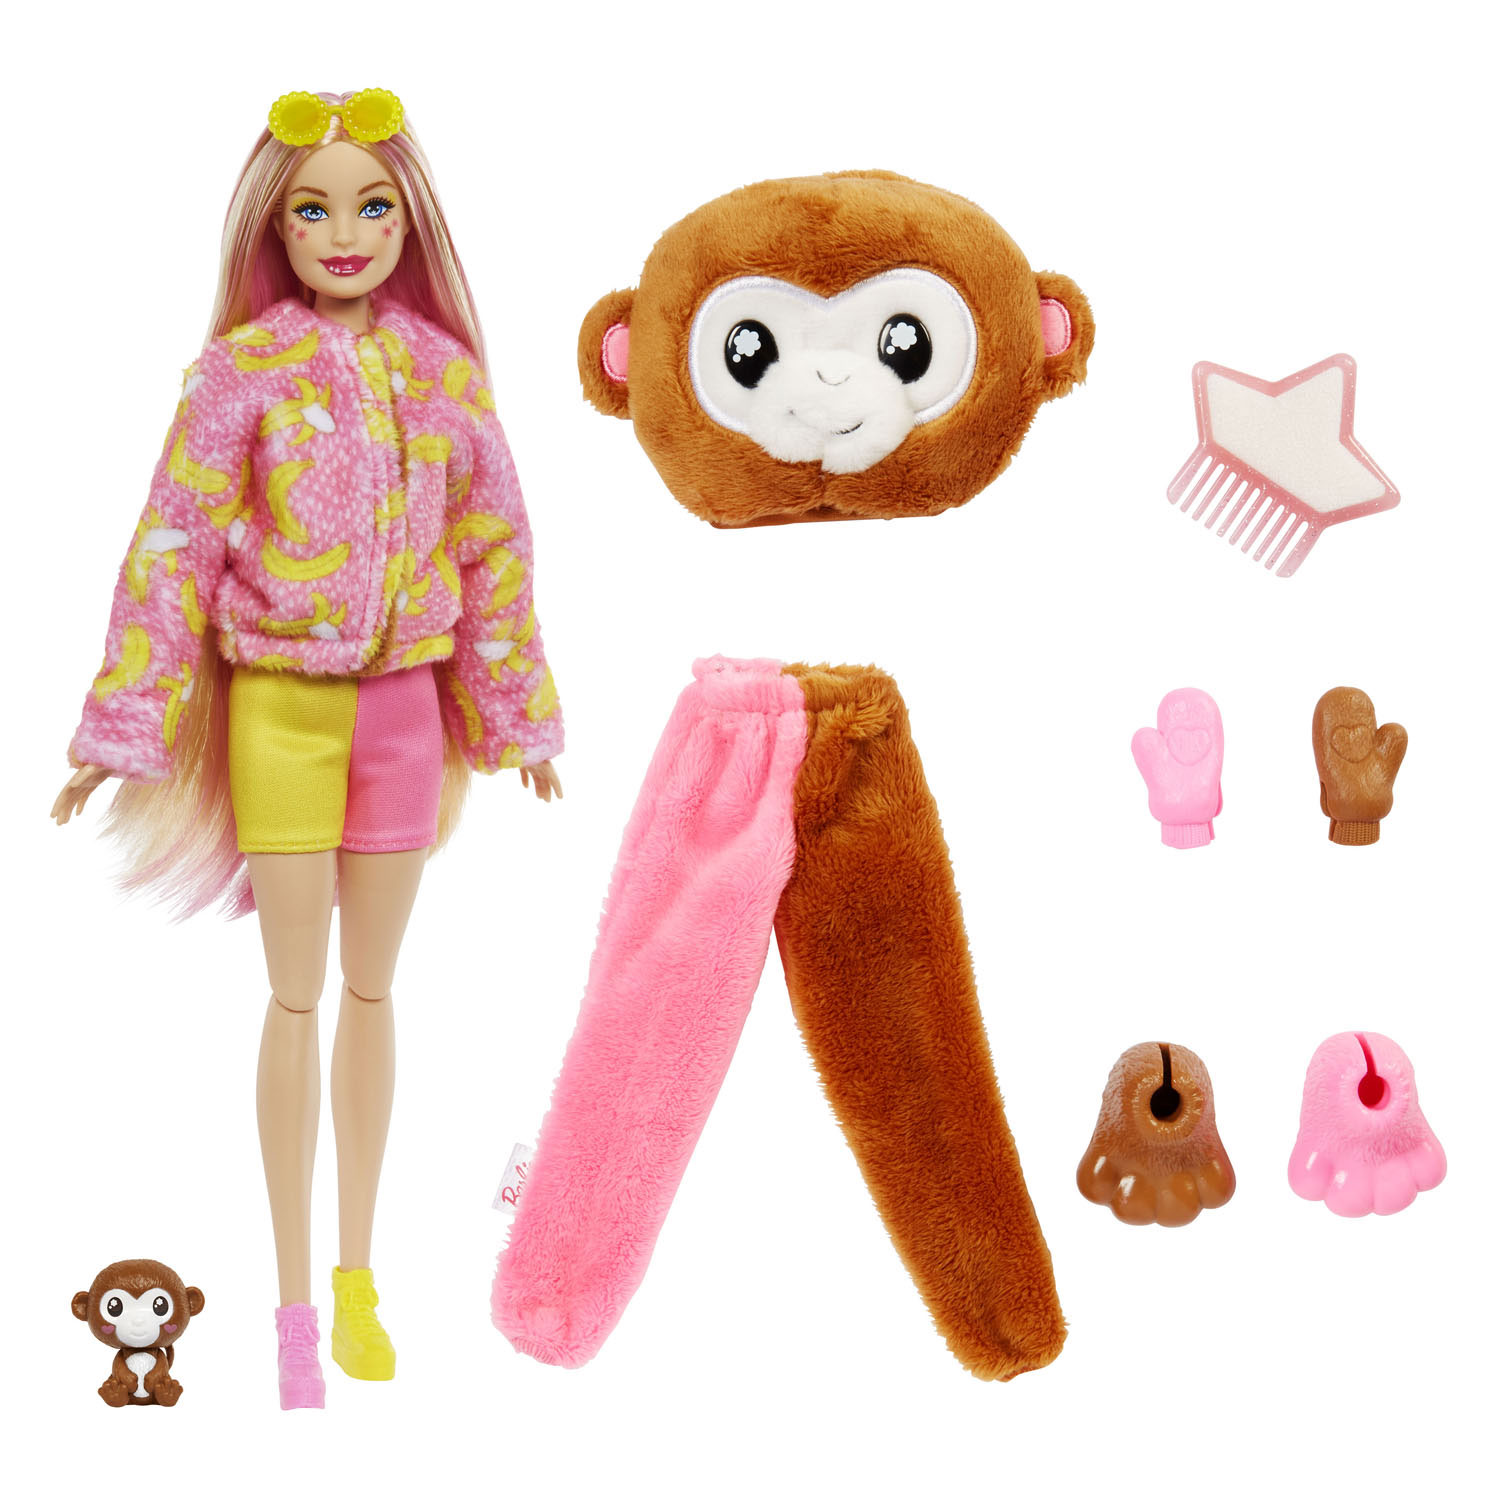 Barbie Cutie Reveal Jungle – Affe